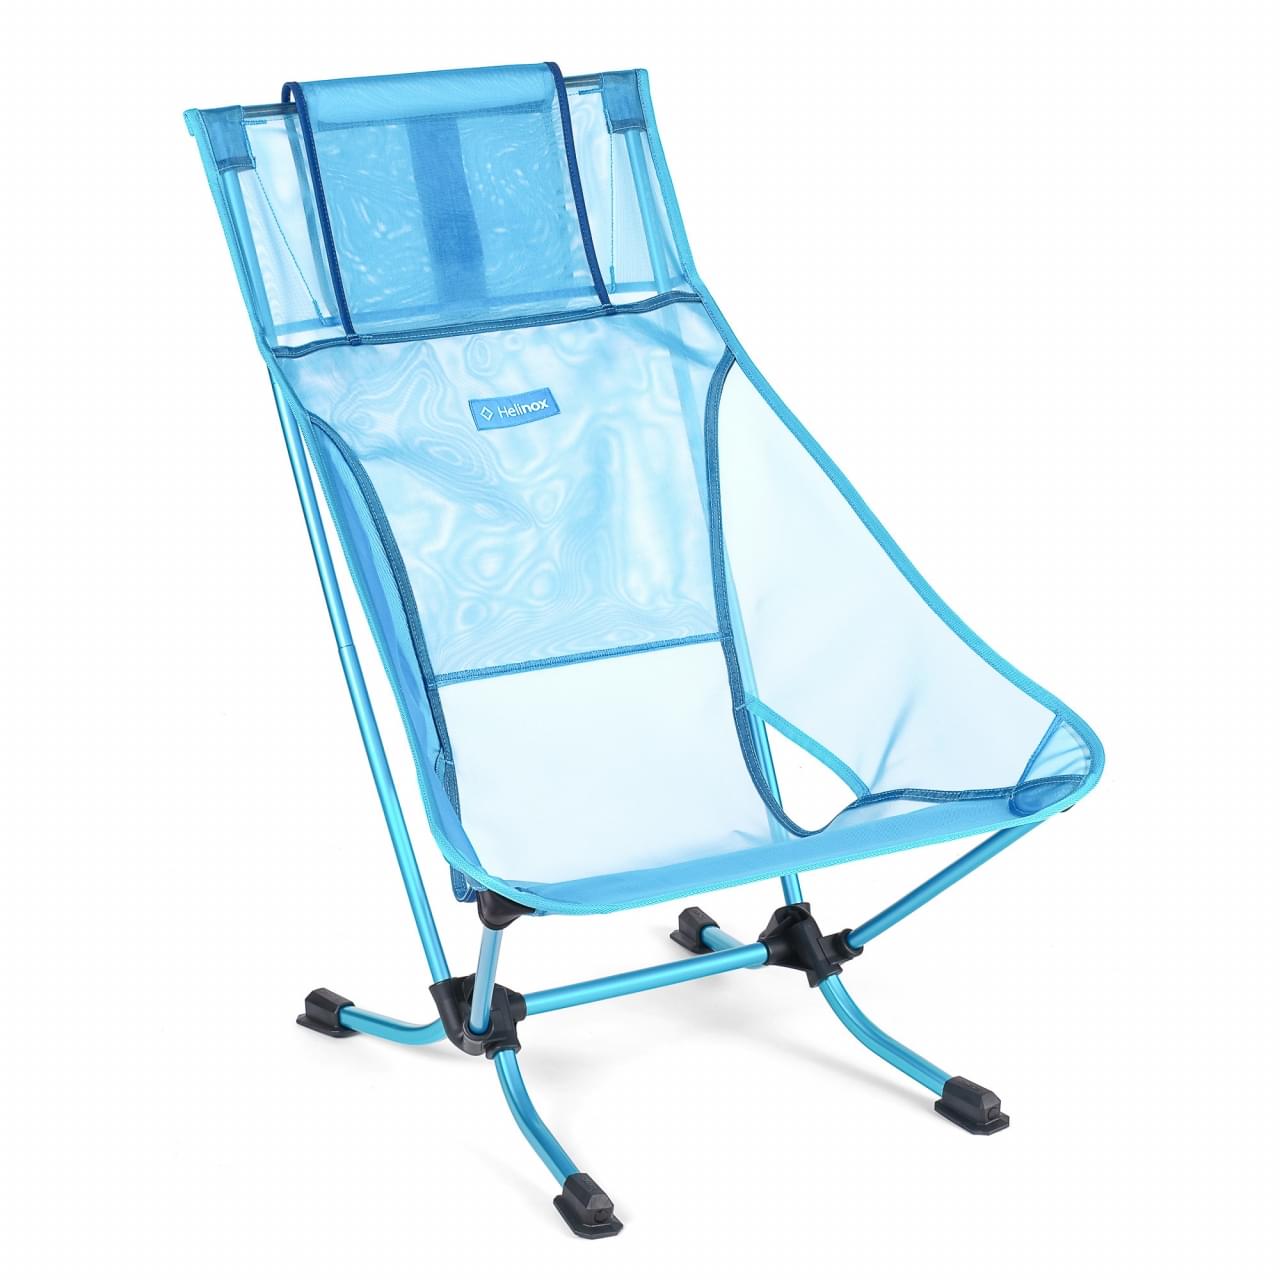 Sportman Identiteit Vul in Helinox Beach Chair Lichtgewicht Stoel Blauw kopen?